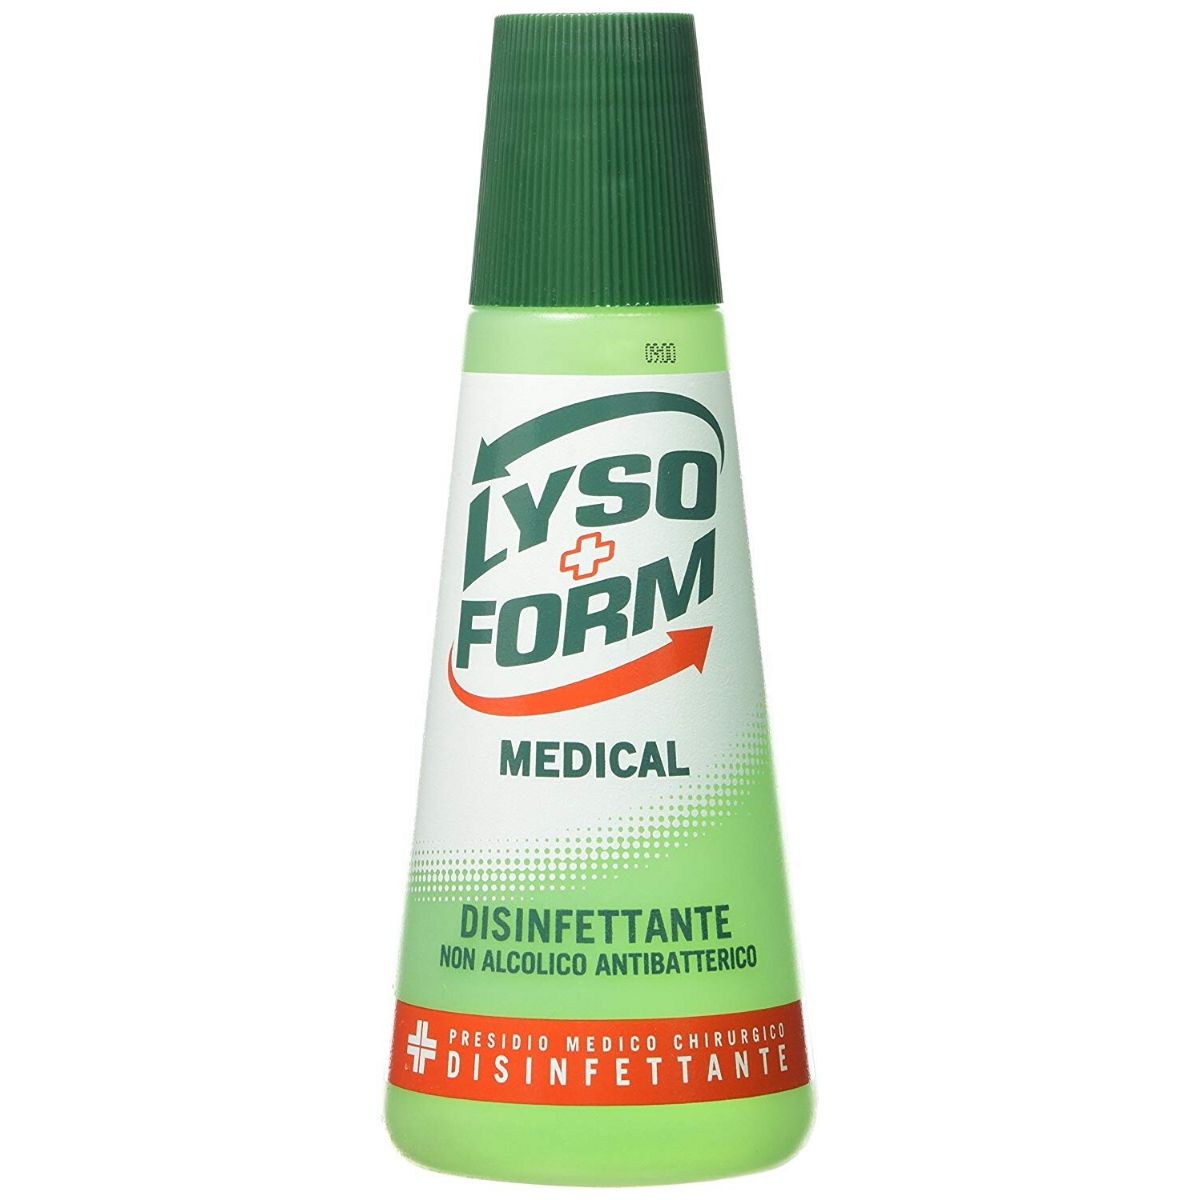 Lyso form medical disinfettante non alcolilico antibatterico ml 250 pezzi 6 flaconi